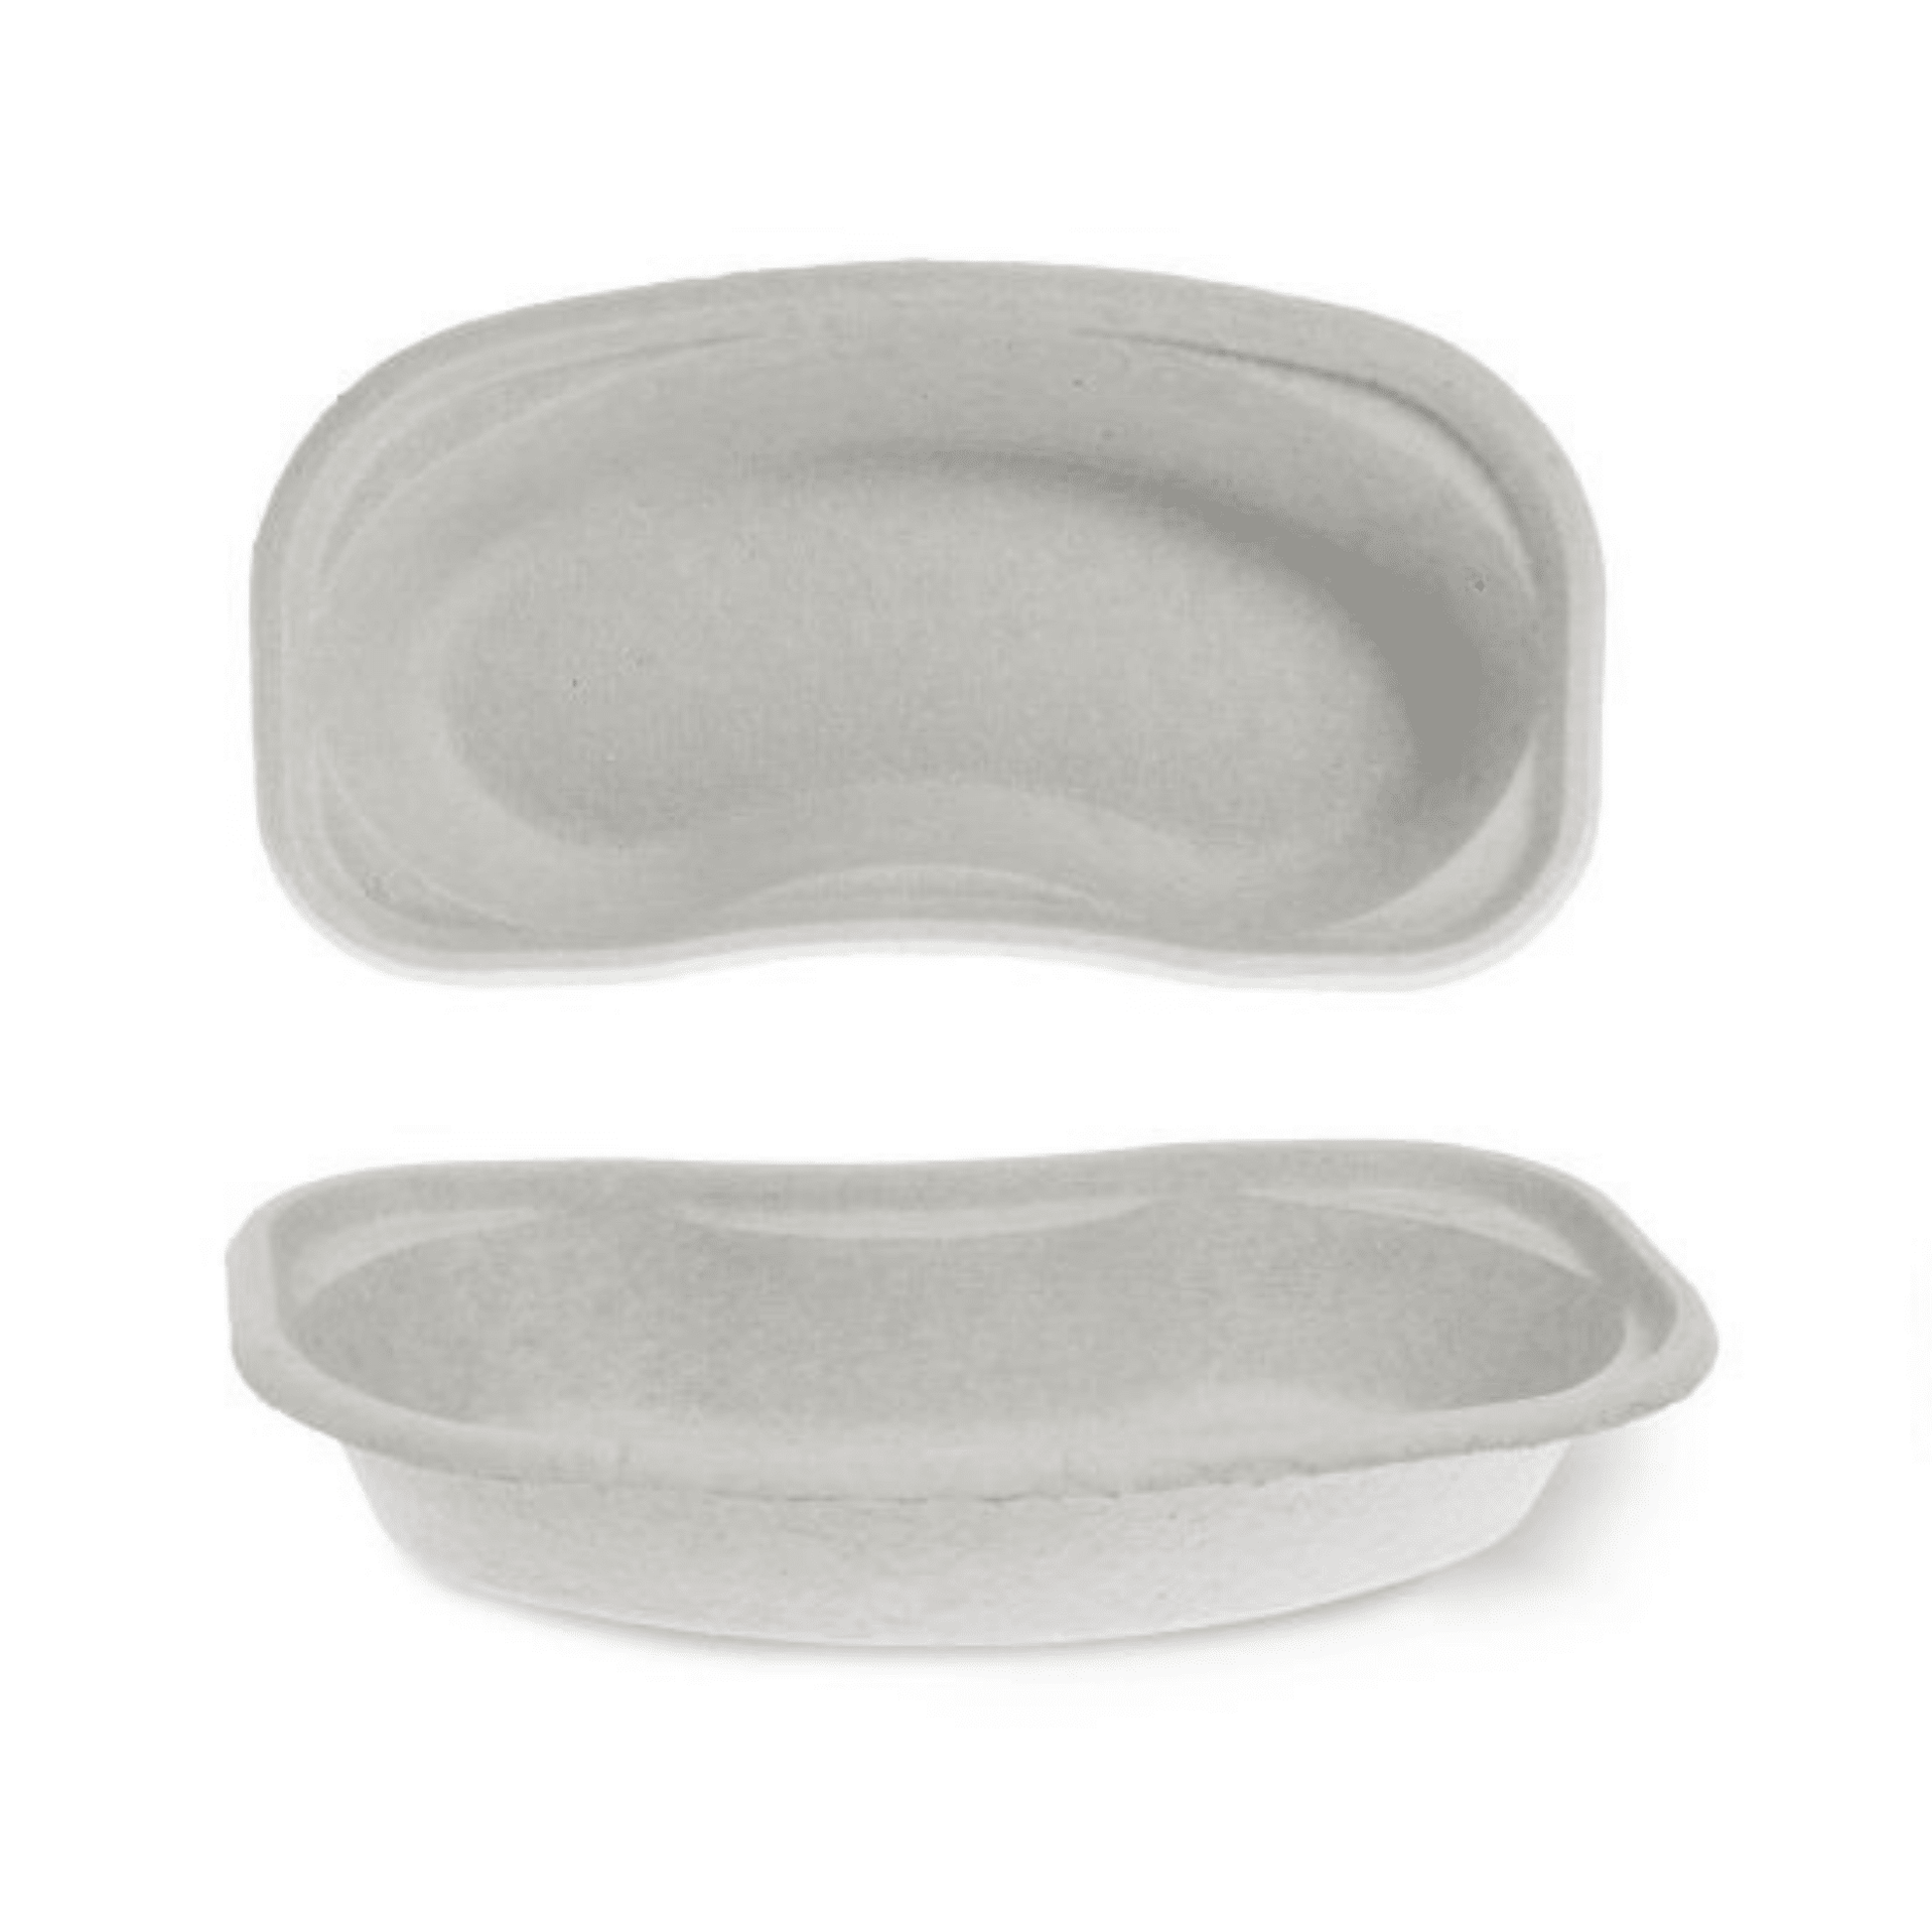 Zwei Meditrade BeeSana® Nierenschale Pappe Einwegschalen aus Papierbrei auf weißem Hintergrund, eine von oben und die andere von der Seite betrachtet.